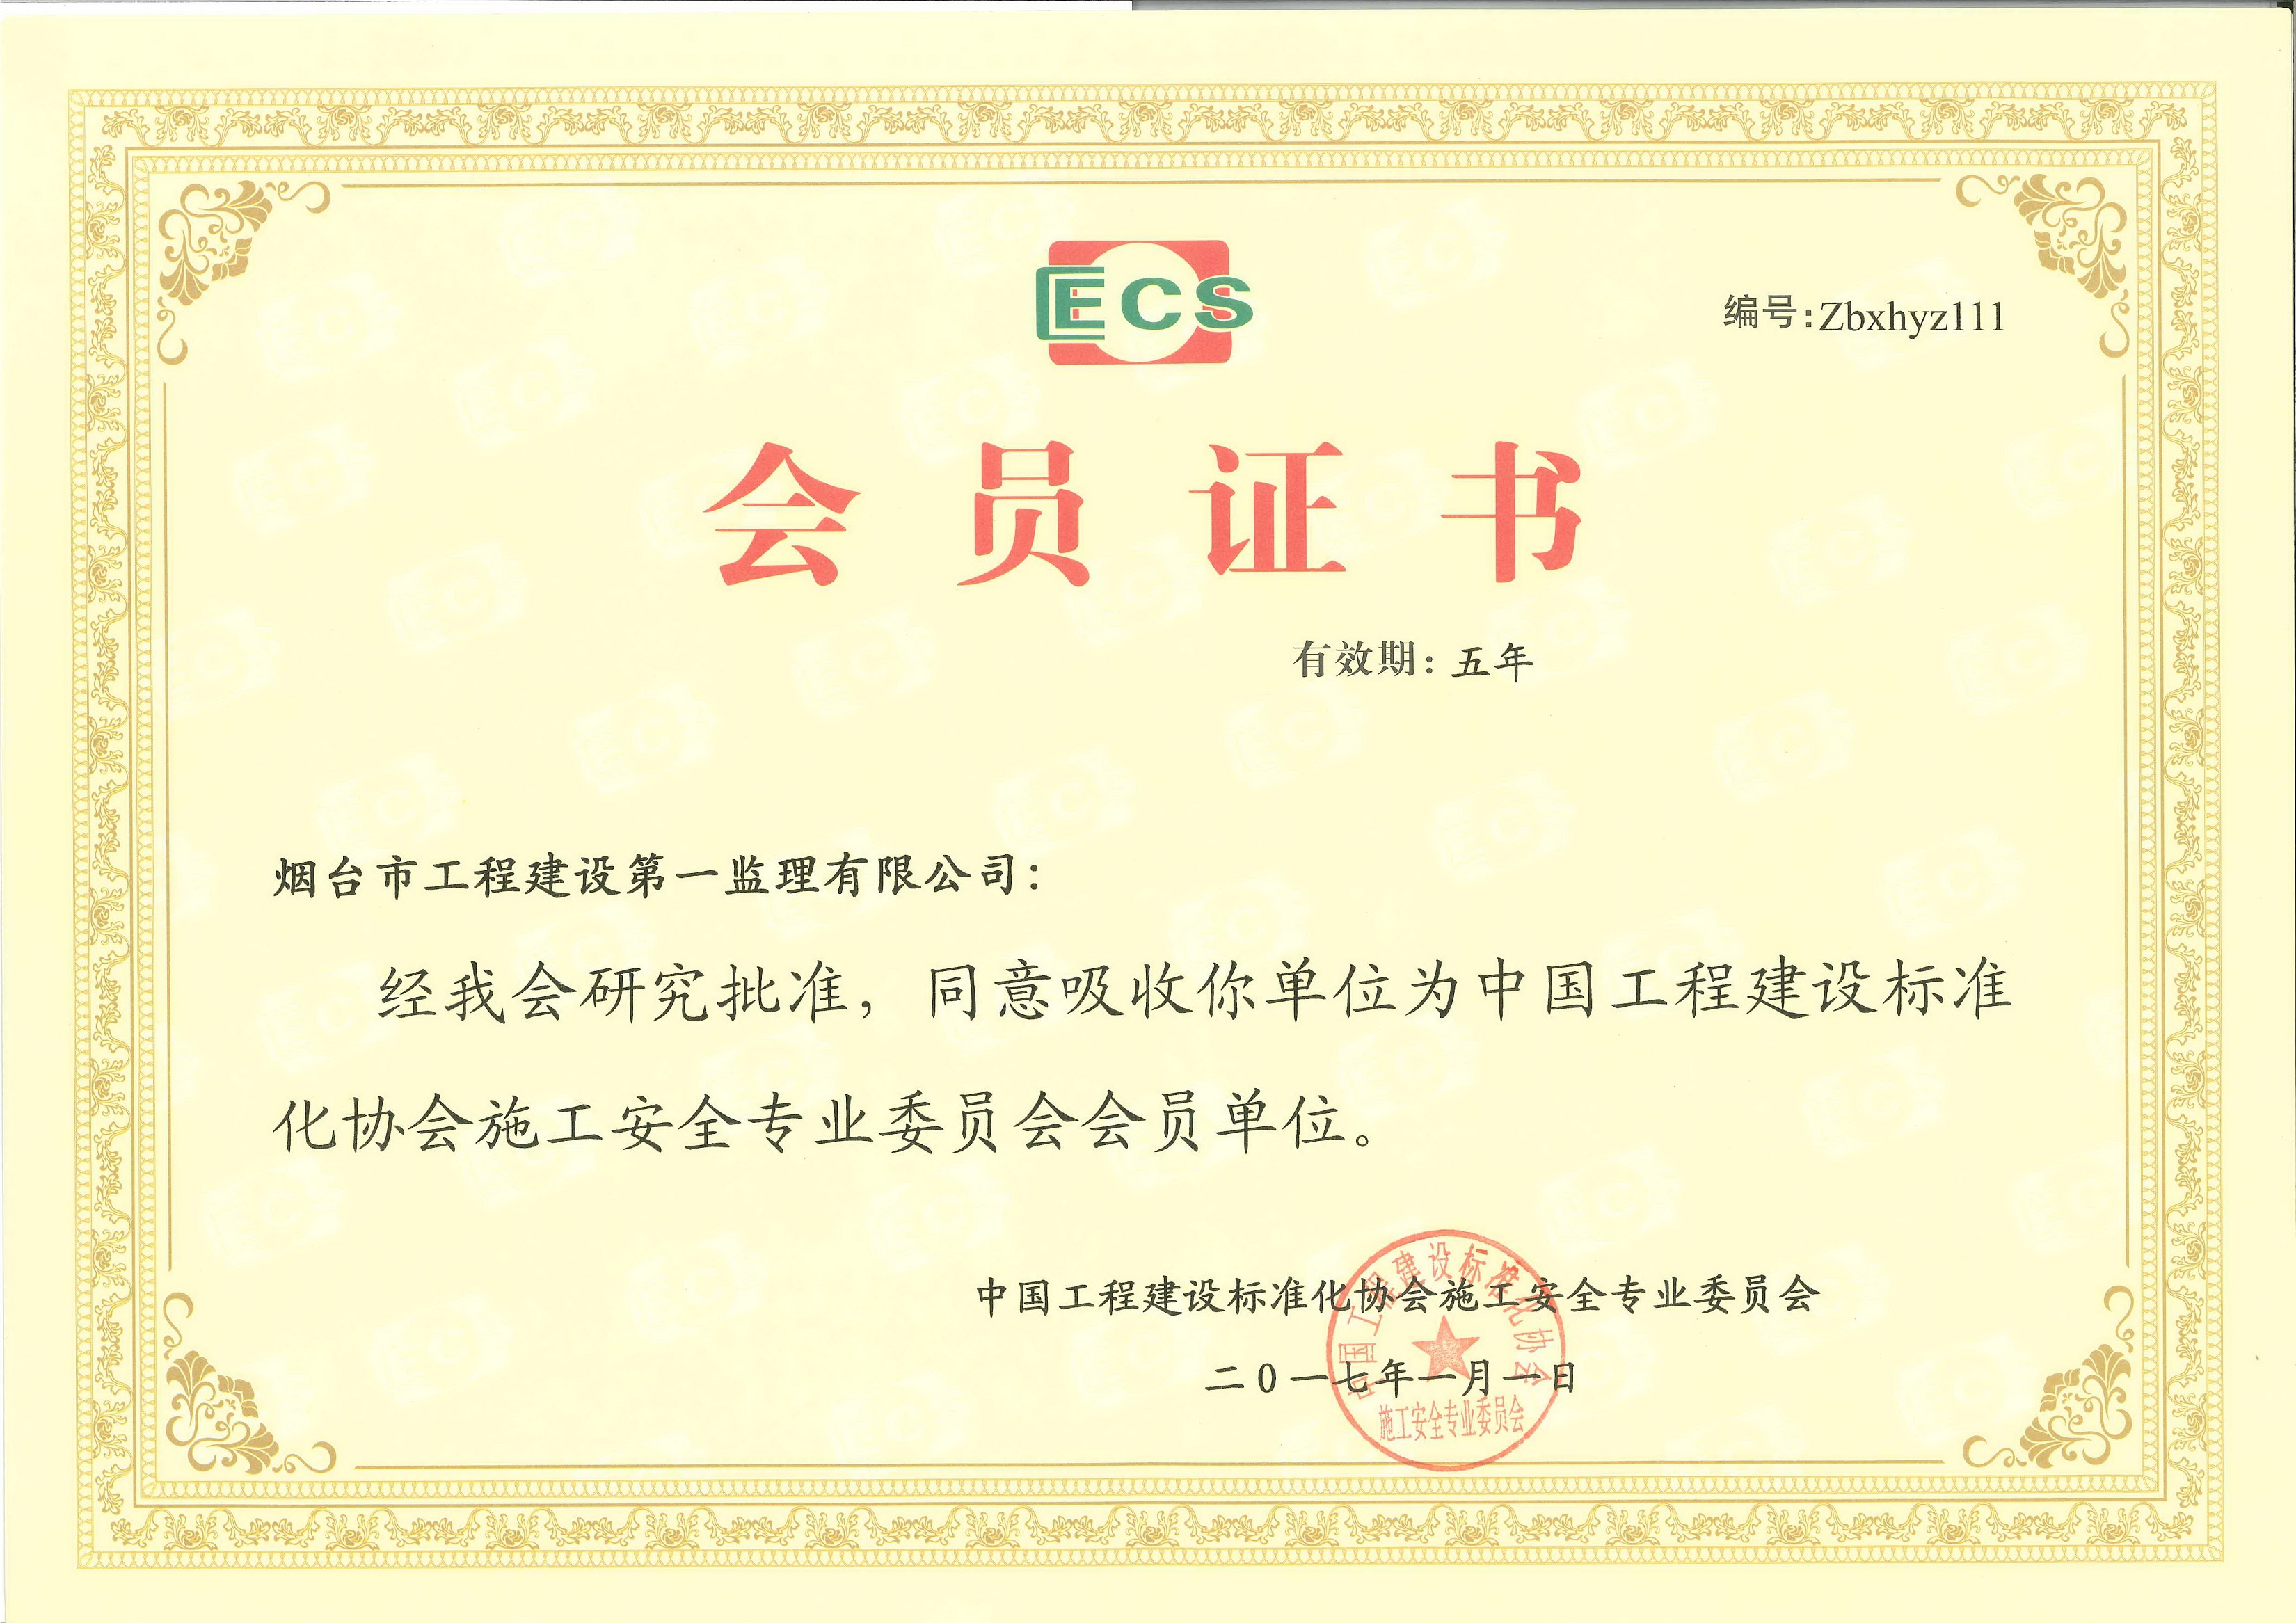 中國工程建設標準化協會施工安全專業委員會會員單位5236.jpg